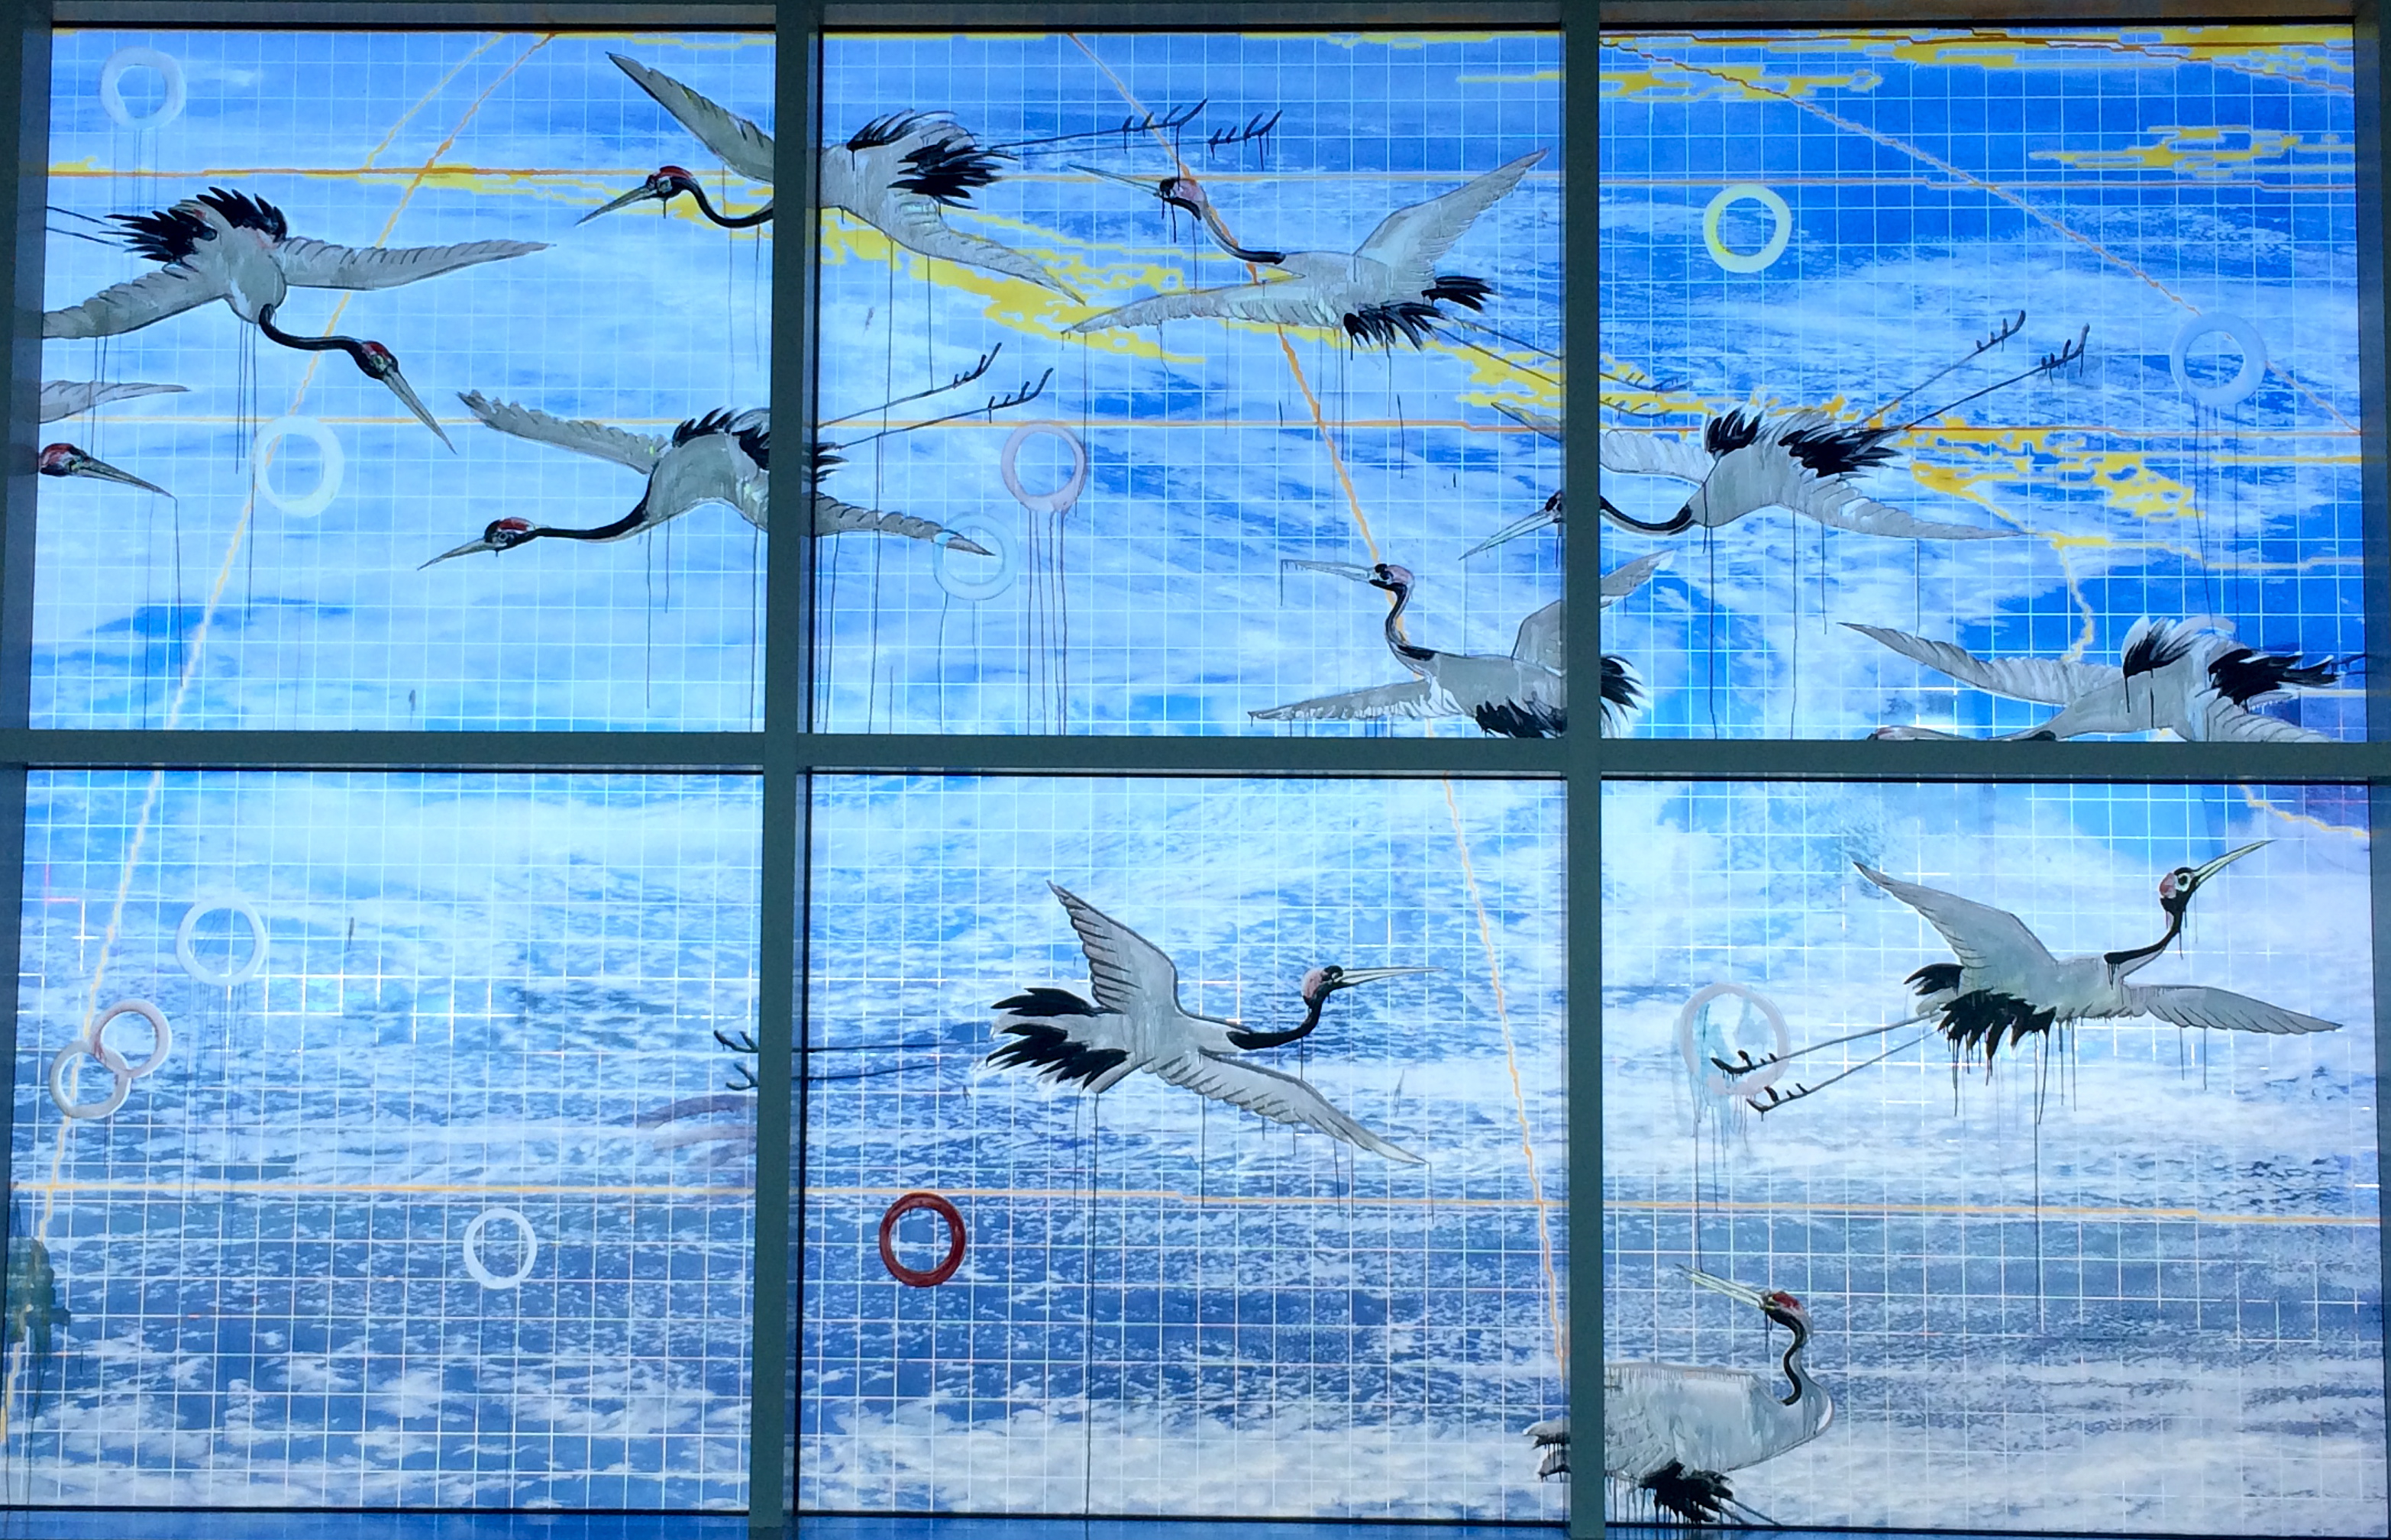 Oakland Airport Mural